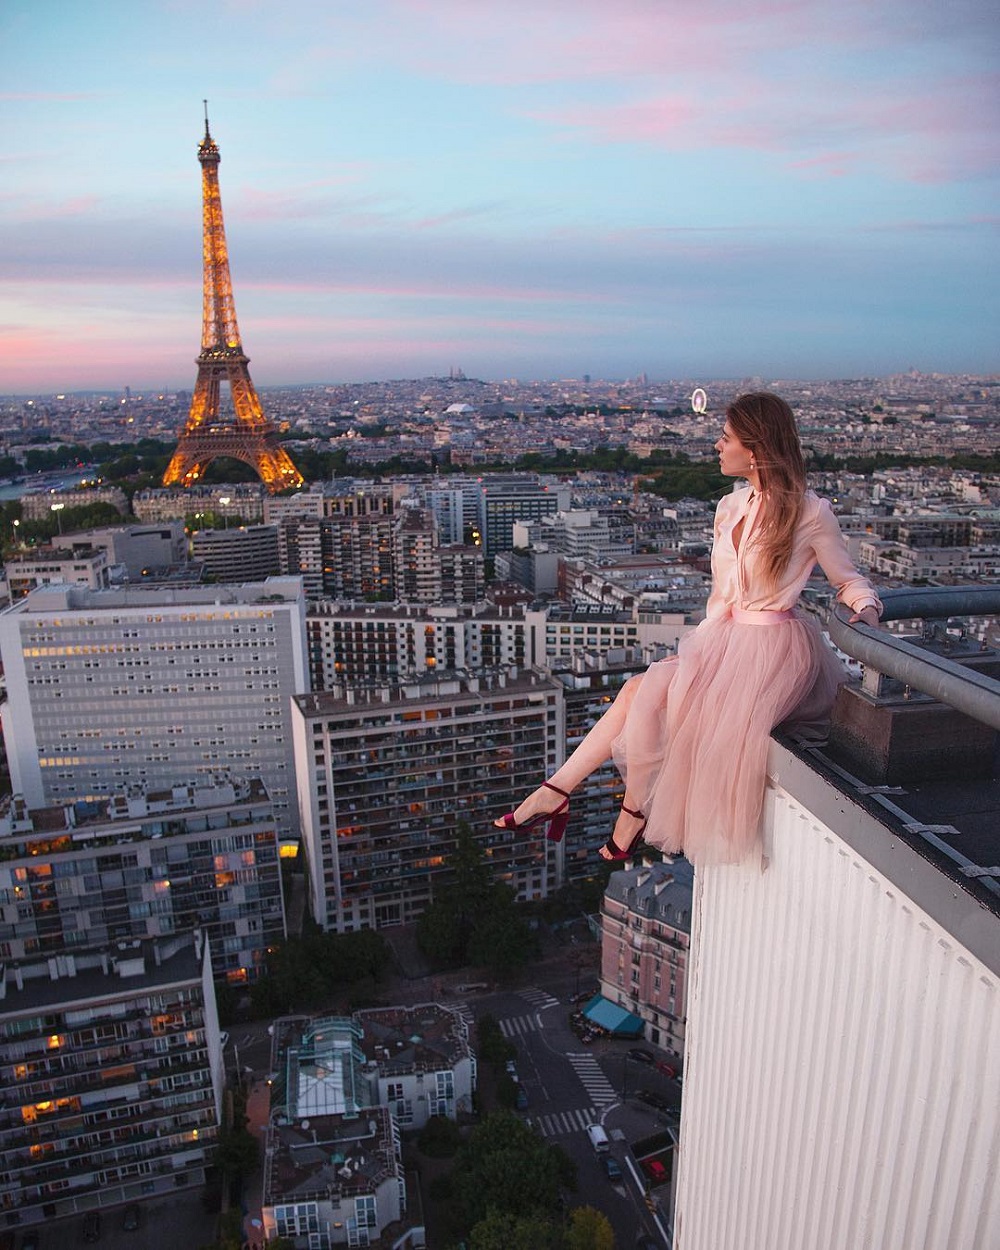 Paris roofer’s photo